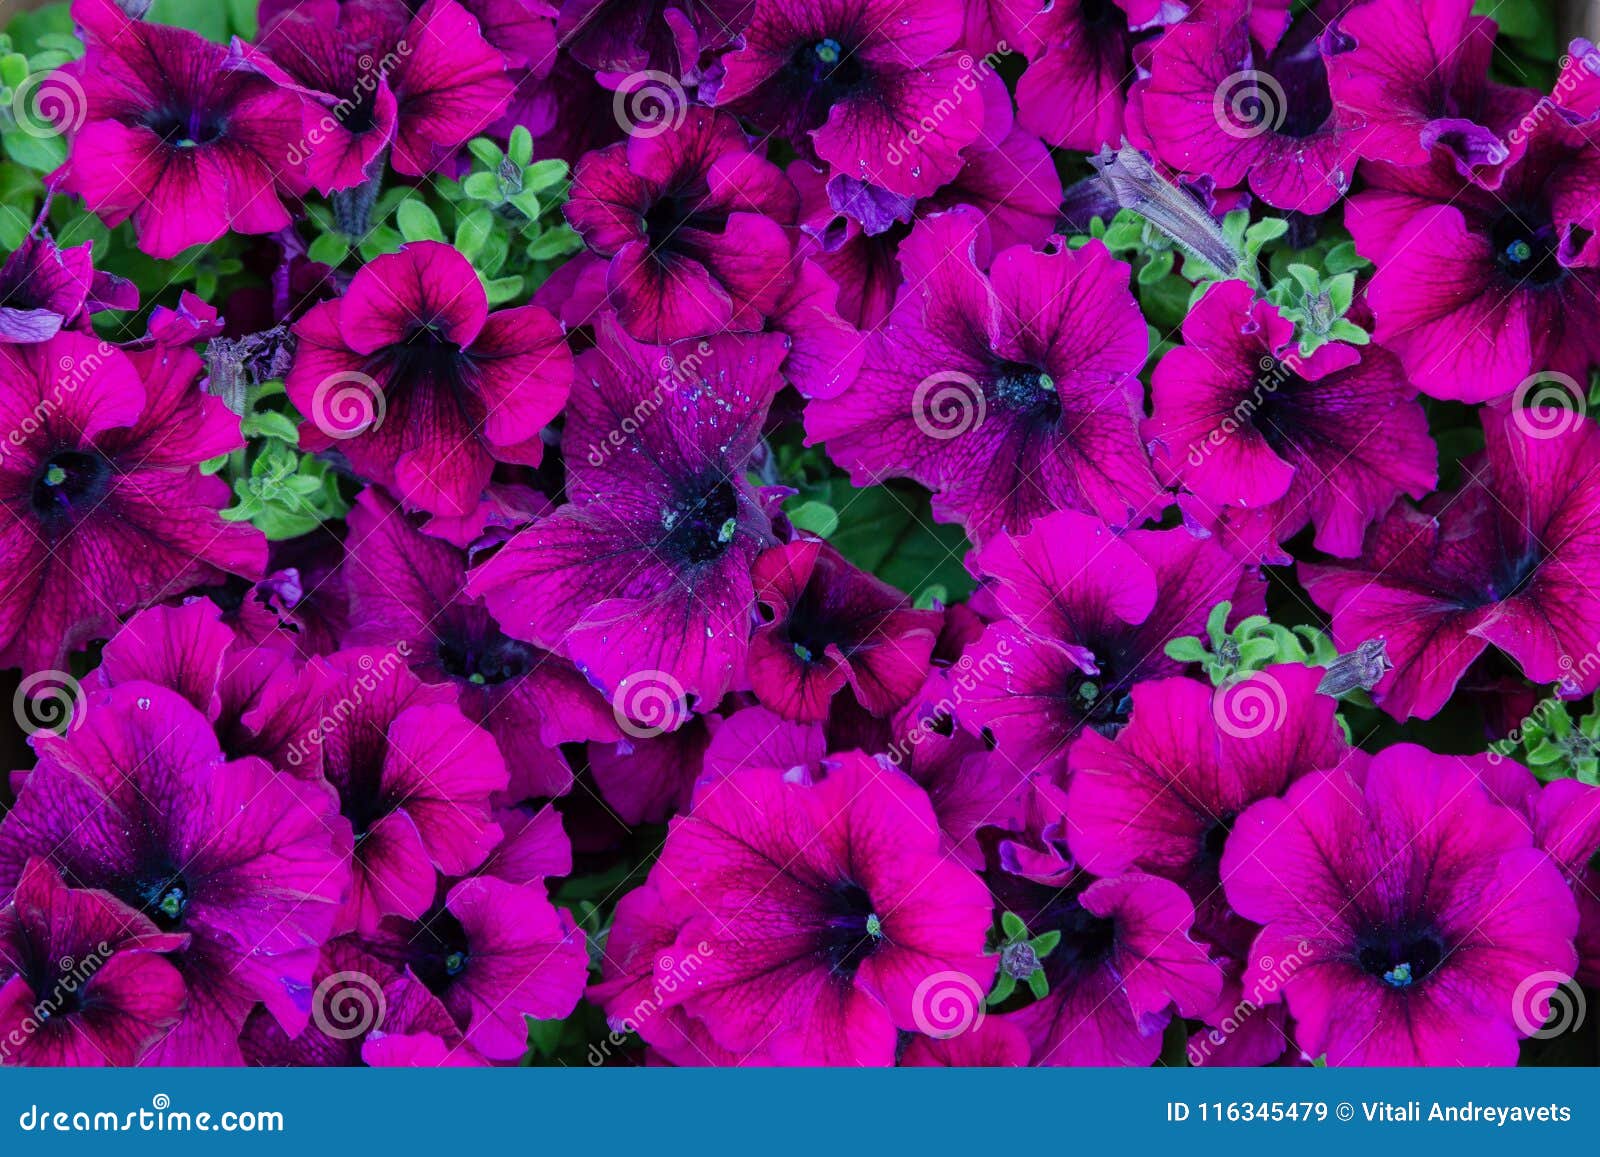 Petunia, tło kwiaty petunia w ogromnych liczbach